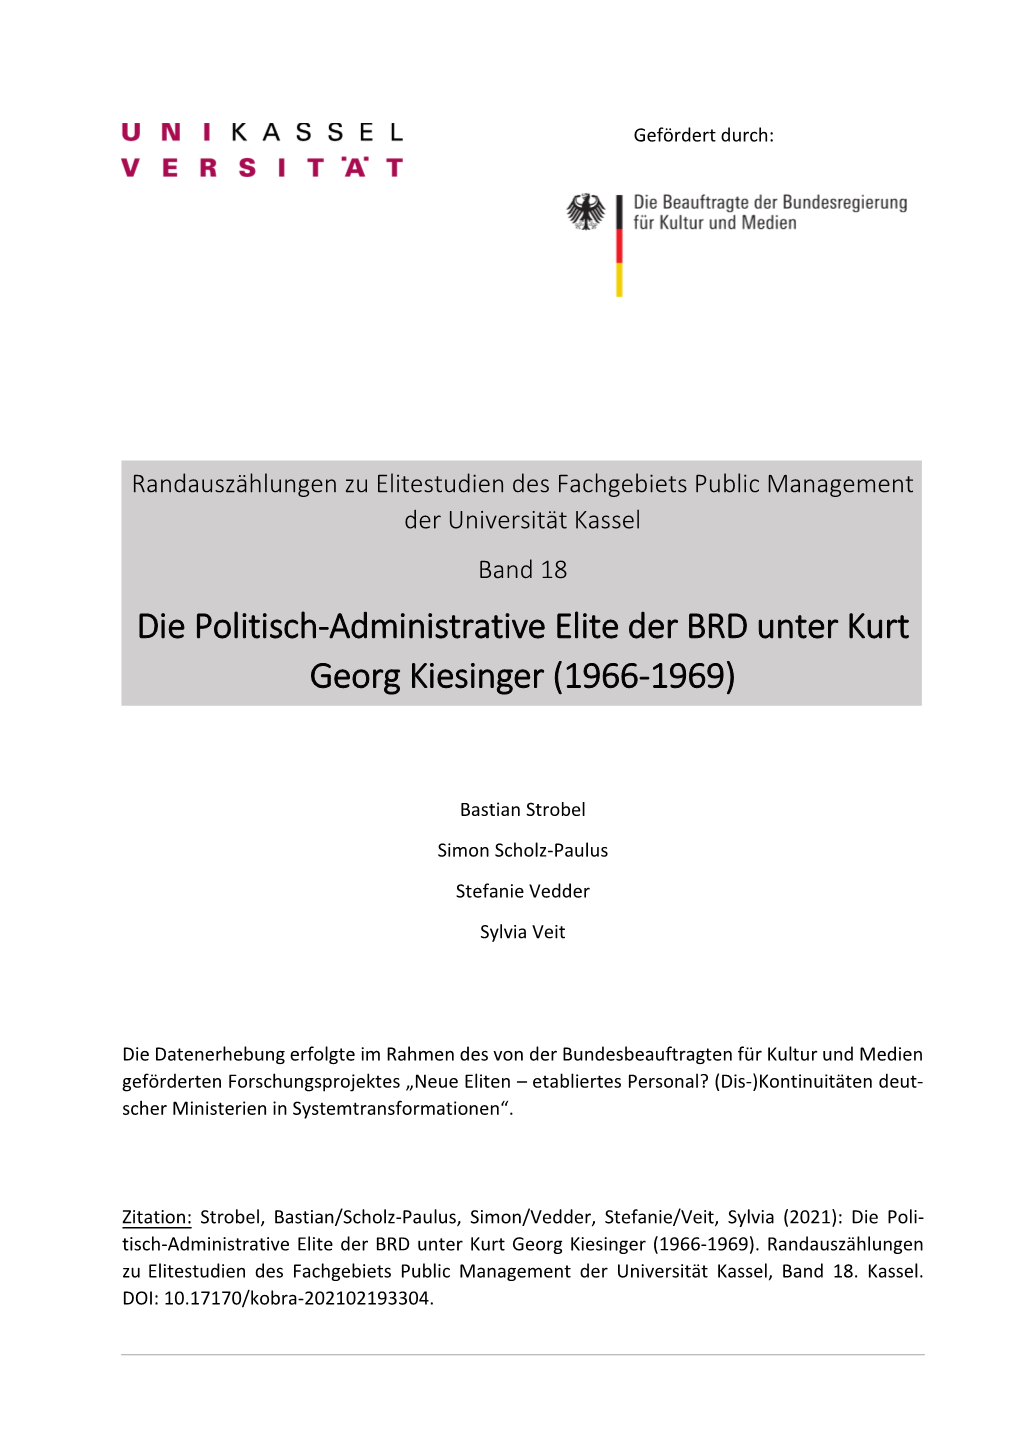 Die Politisch-Administrative Elite Der BRD Unter Kurt Georg Kiesinger (1966-1969)